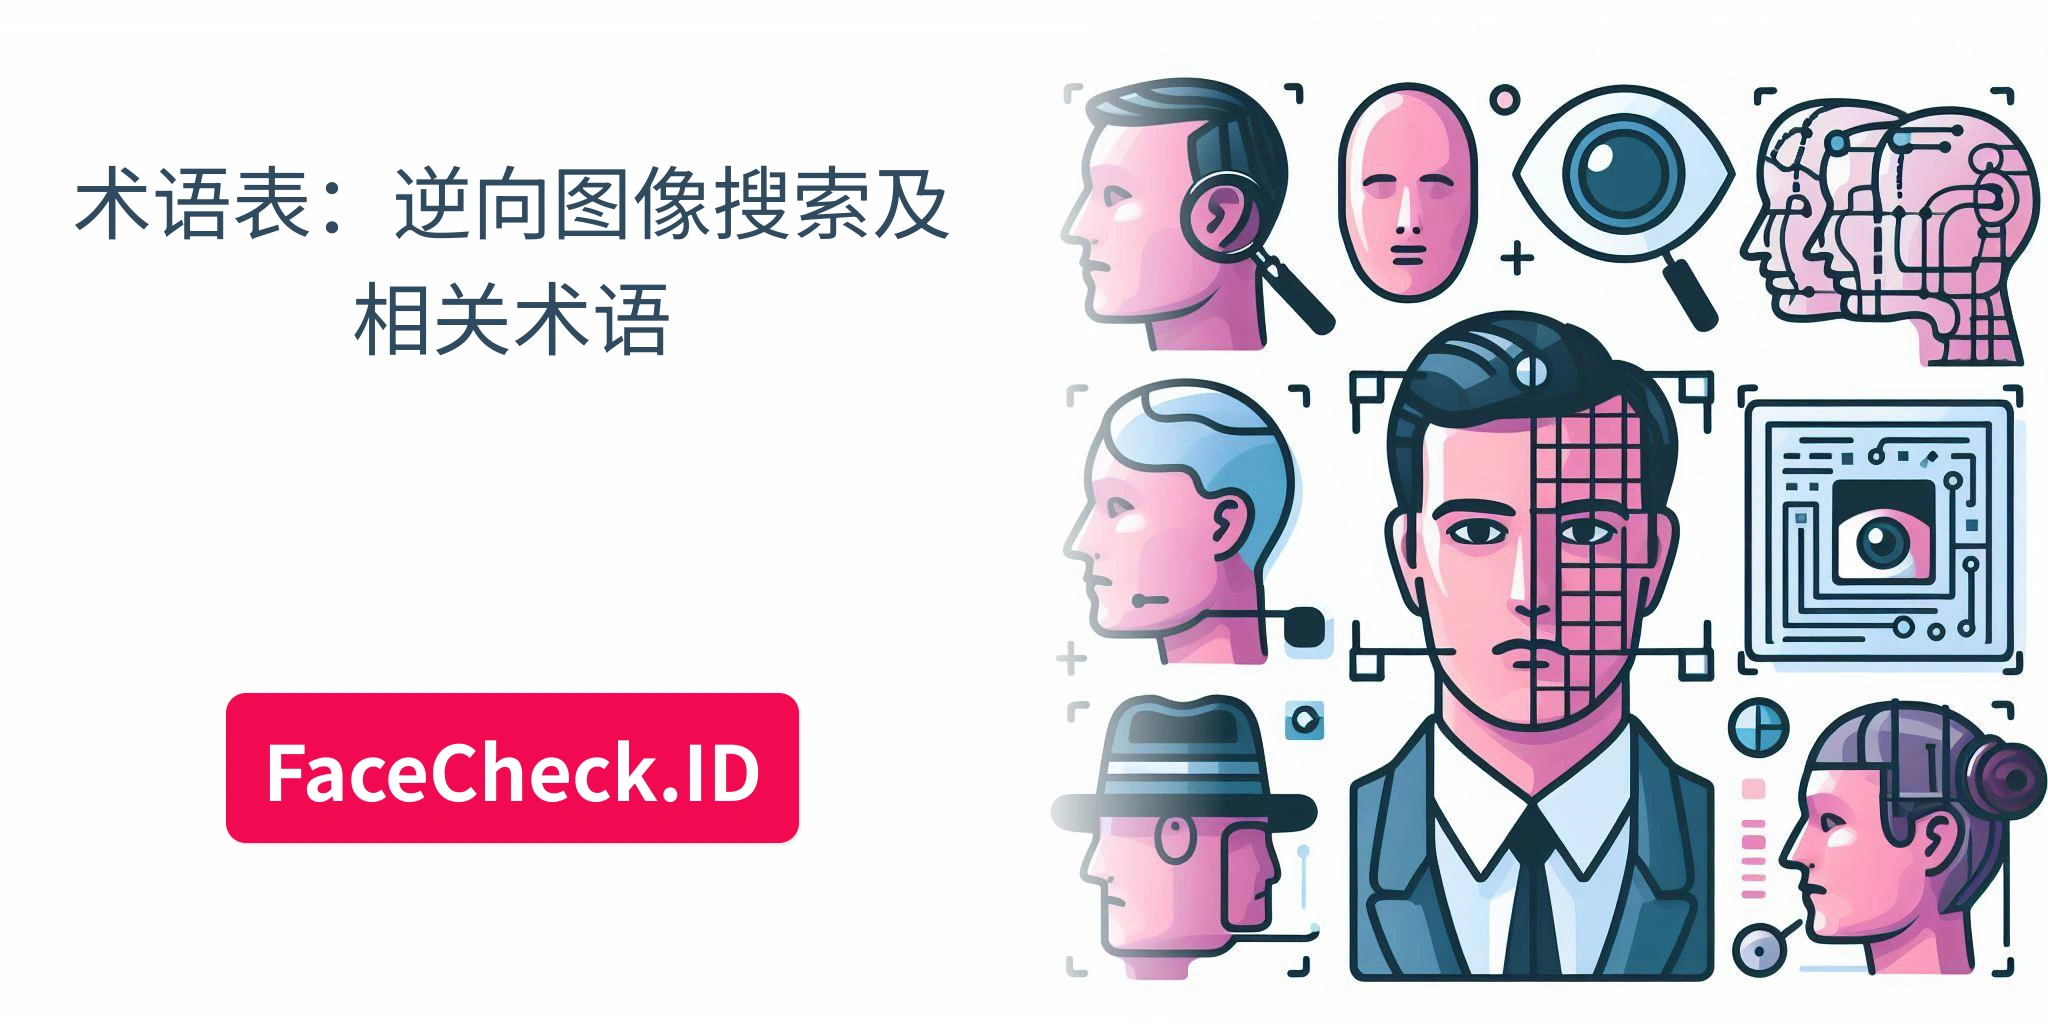 术语表：逆向图像搜索及相关术语 FaceCheck.ID